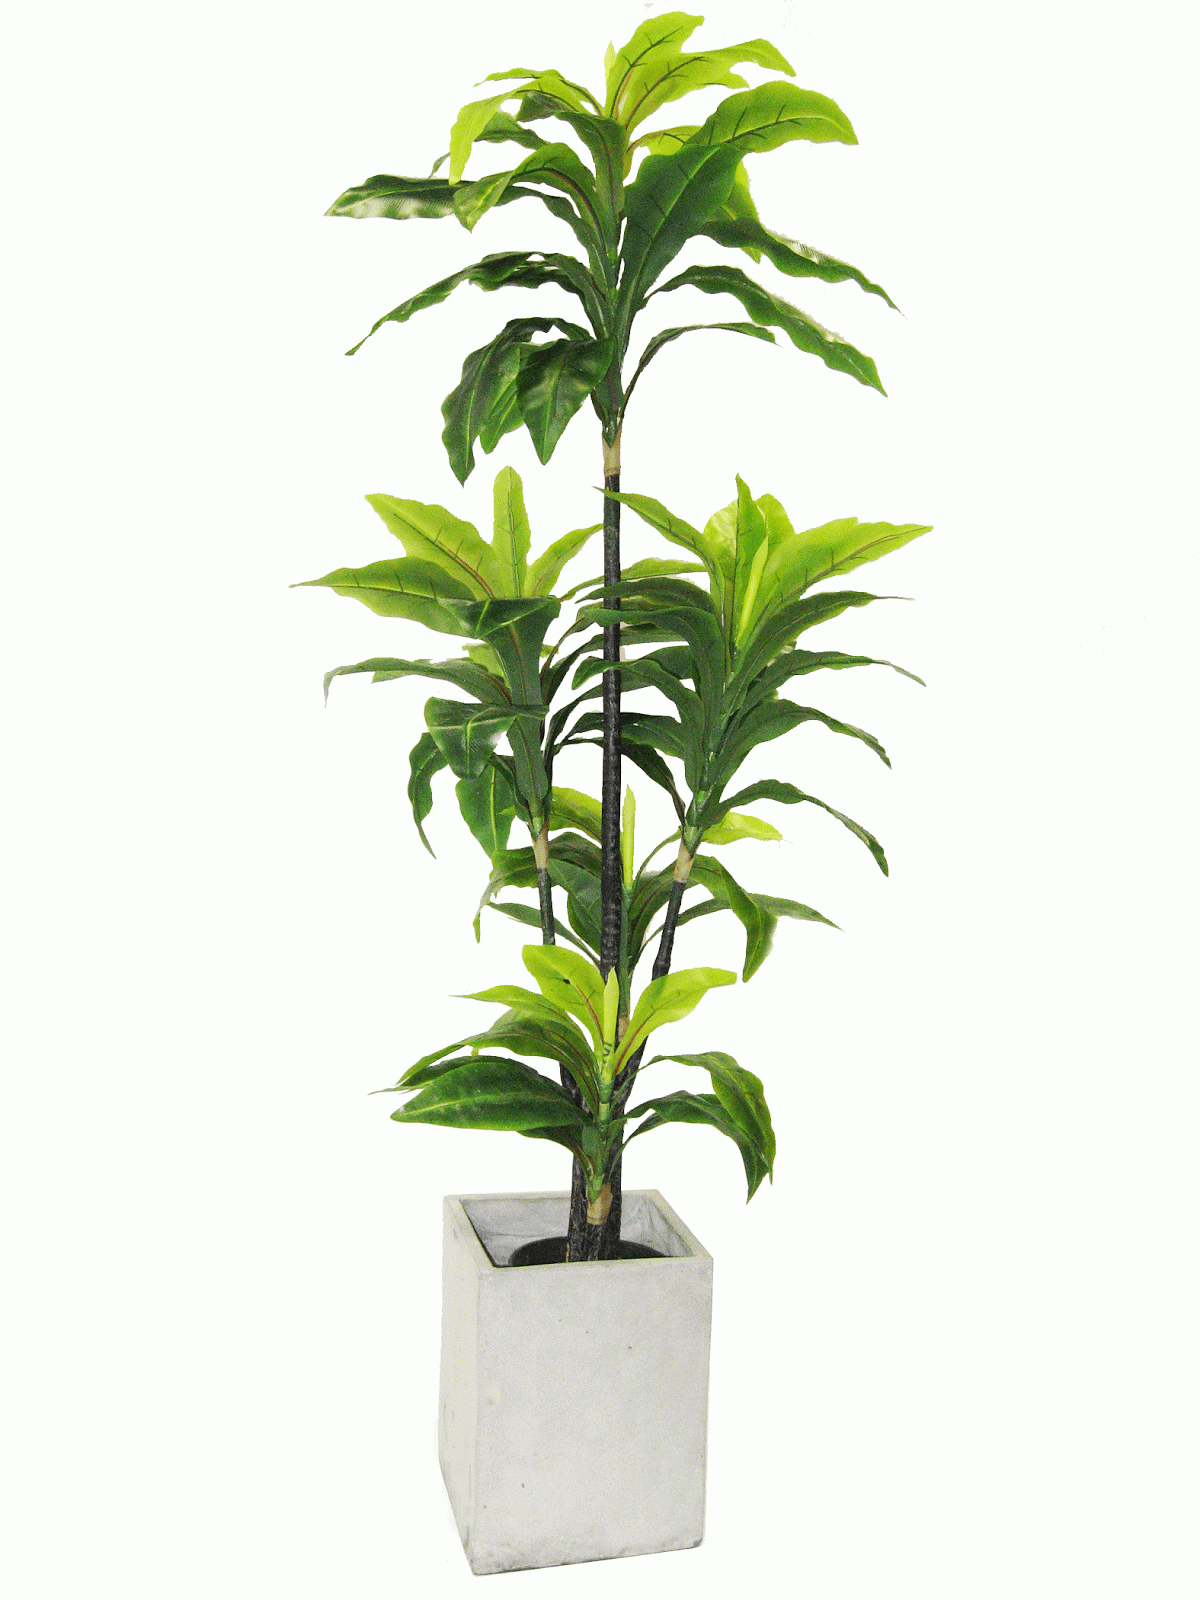 Newturf Solutions: Newturf introduce indoor plants
